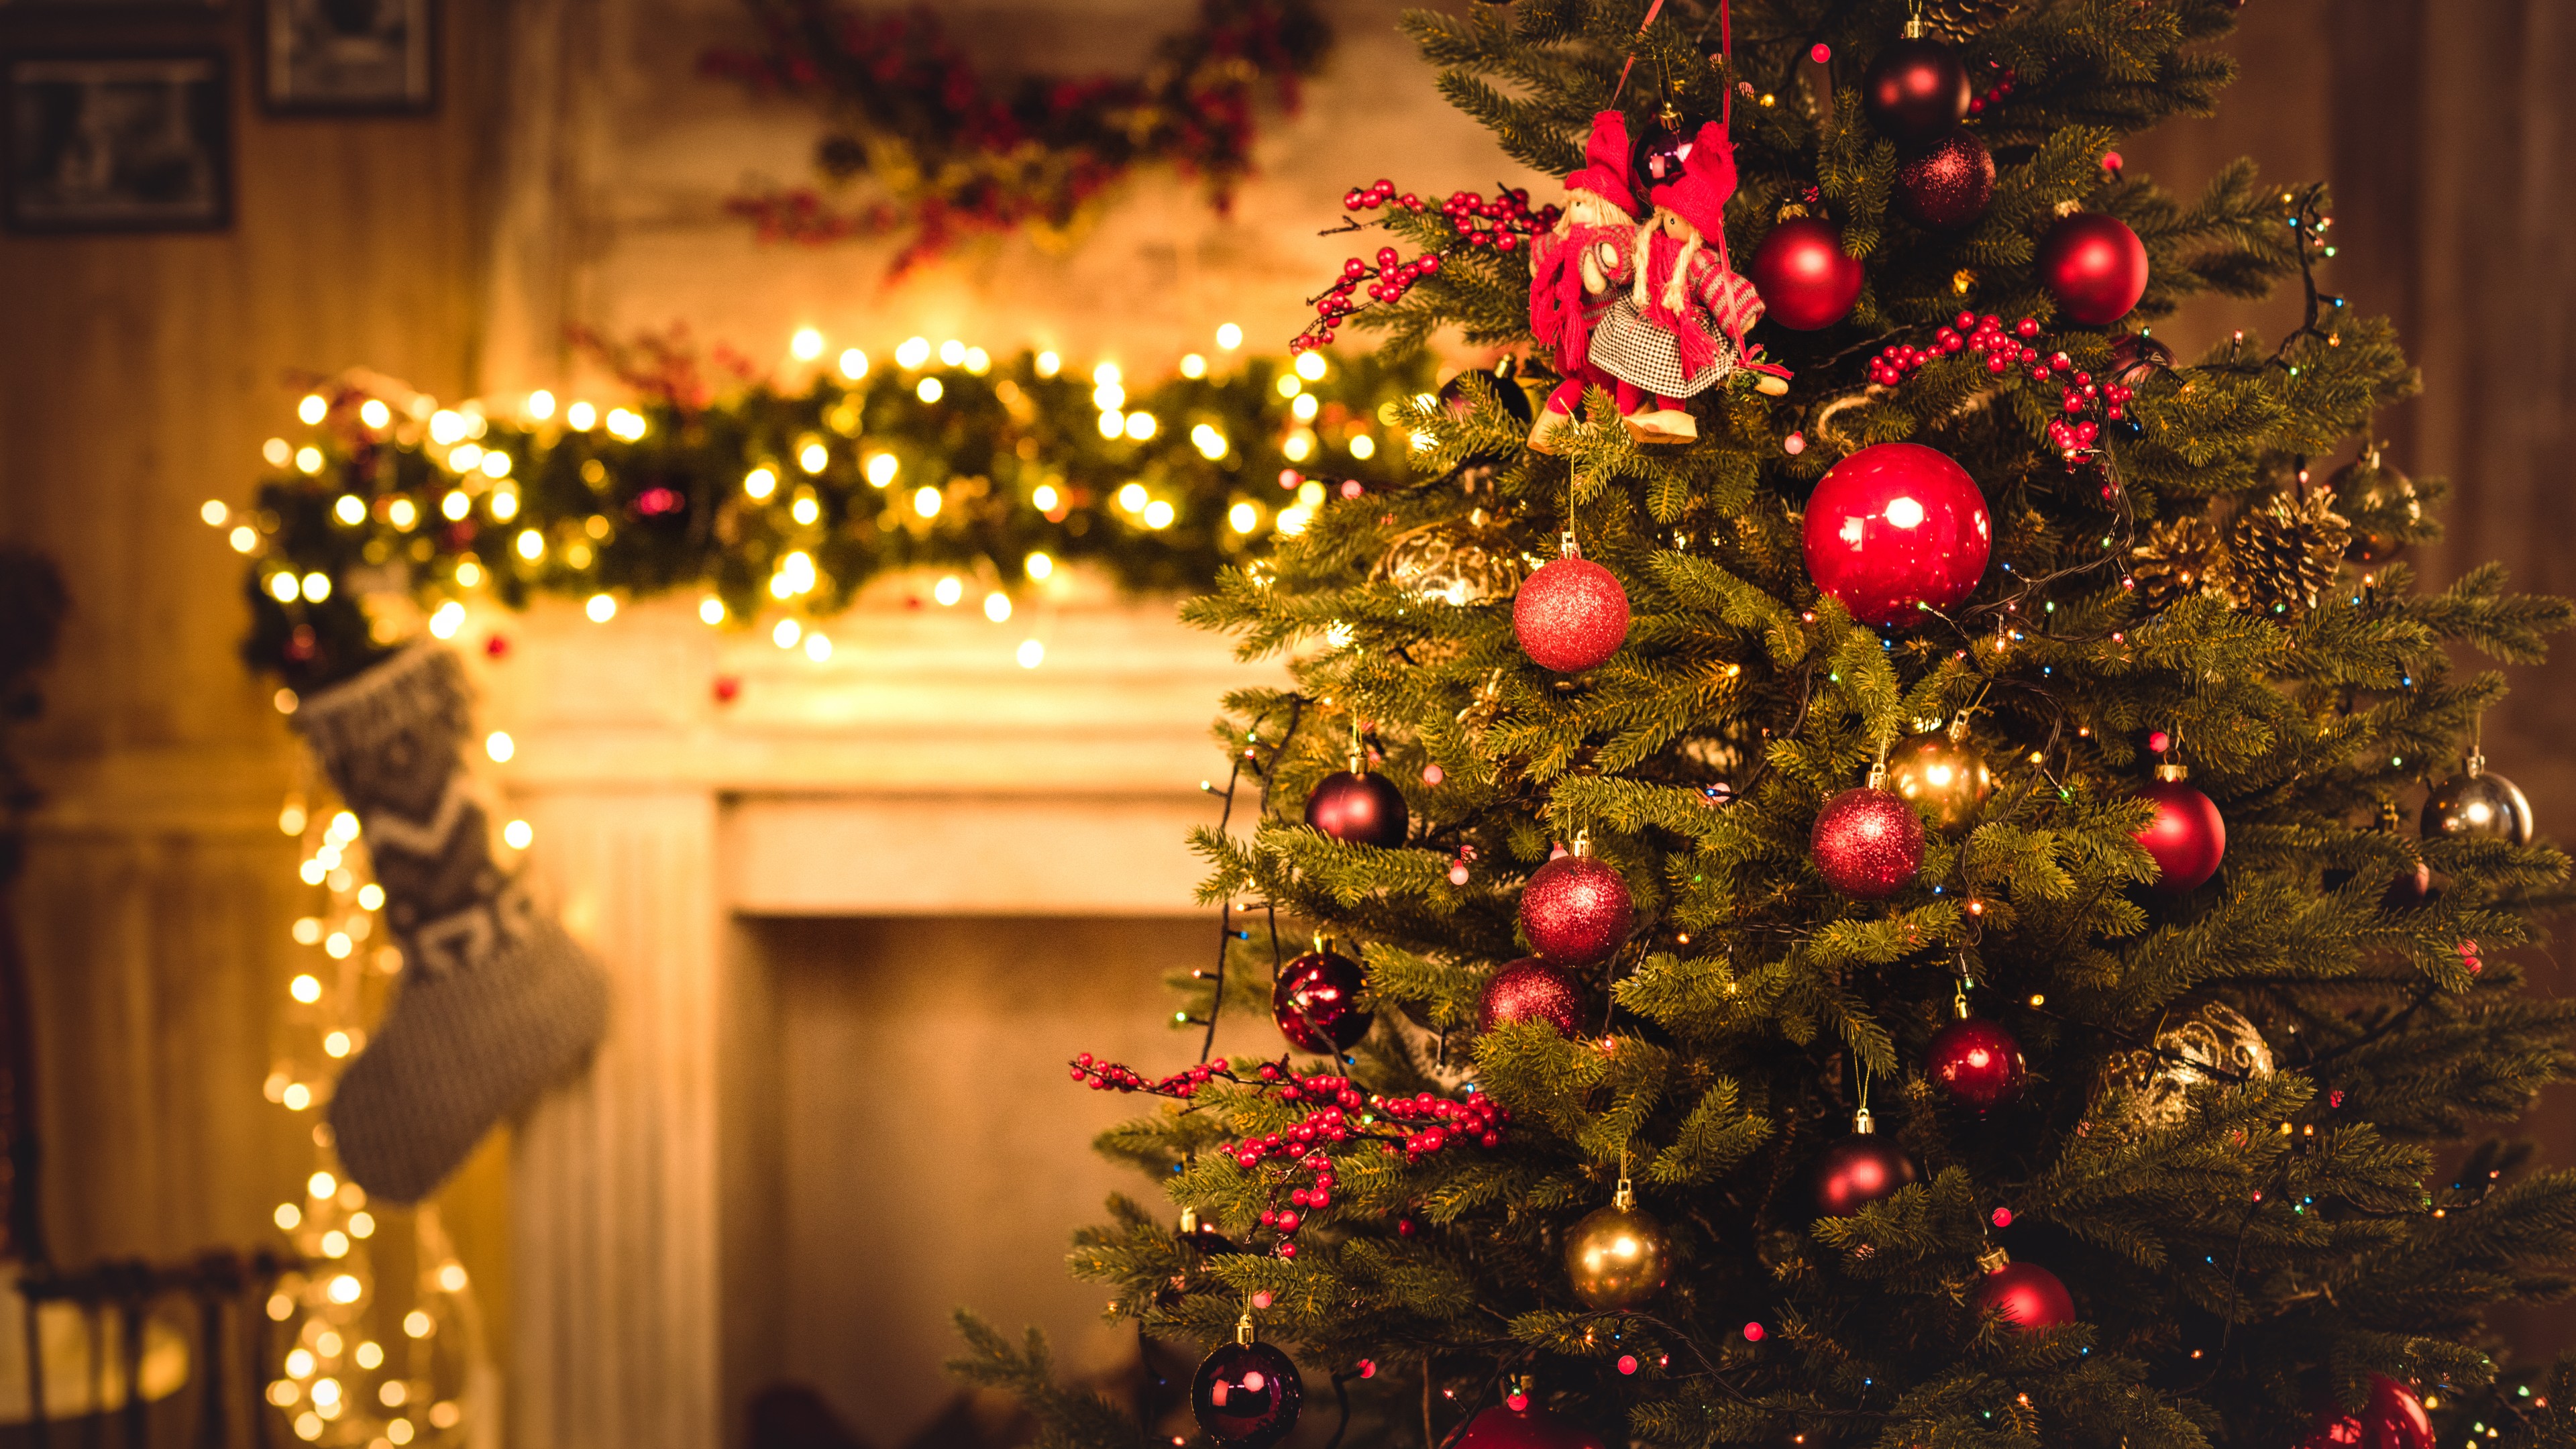 Noel: Bạn đã sẵn sàng để chìm đắm trong không khí lễ hội Noel rực rỡ? Xem ảnh và cảm nhận sự vui tươi của người dân đón chào mùa giáng sinh này, từ những ánh đèn lấp lánh đến những chiếc bánh quy thơm ngon.